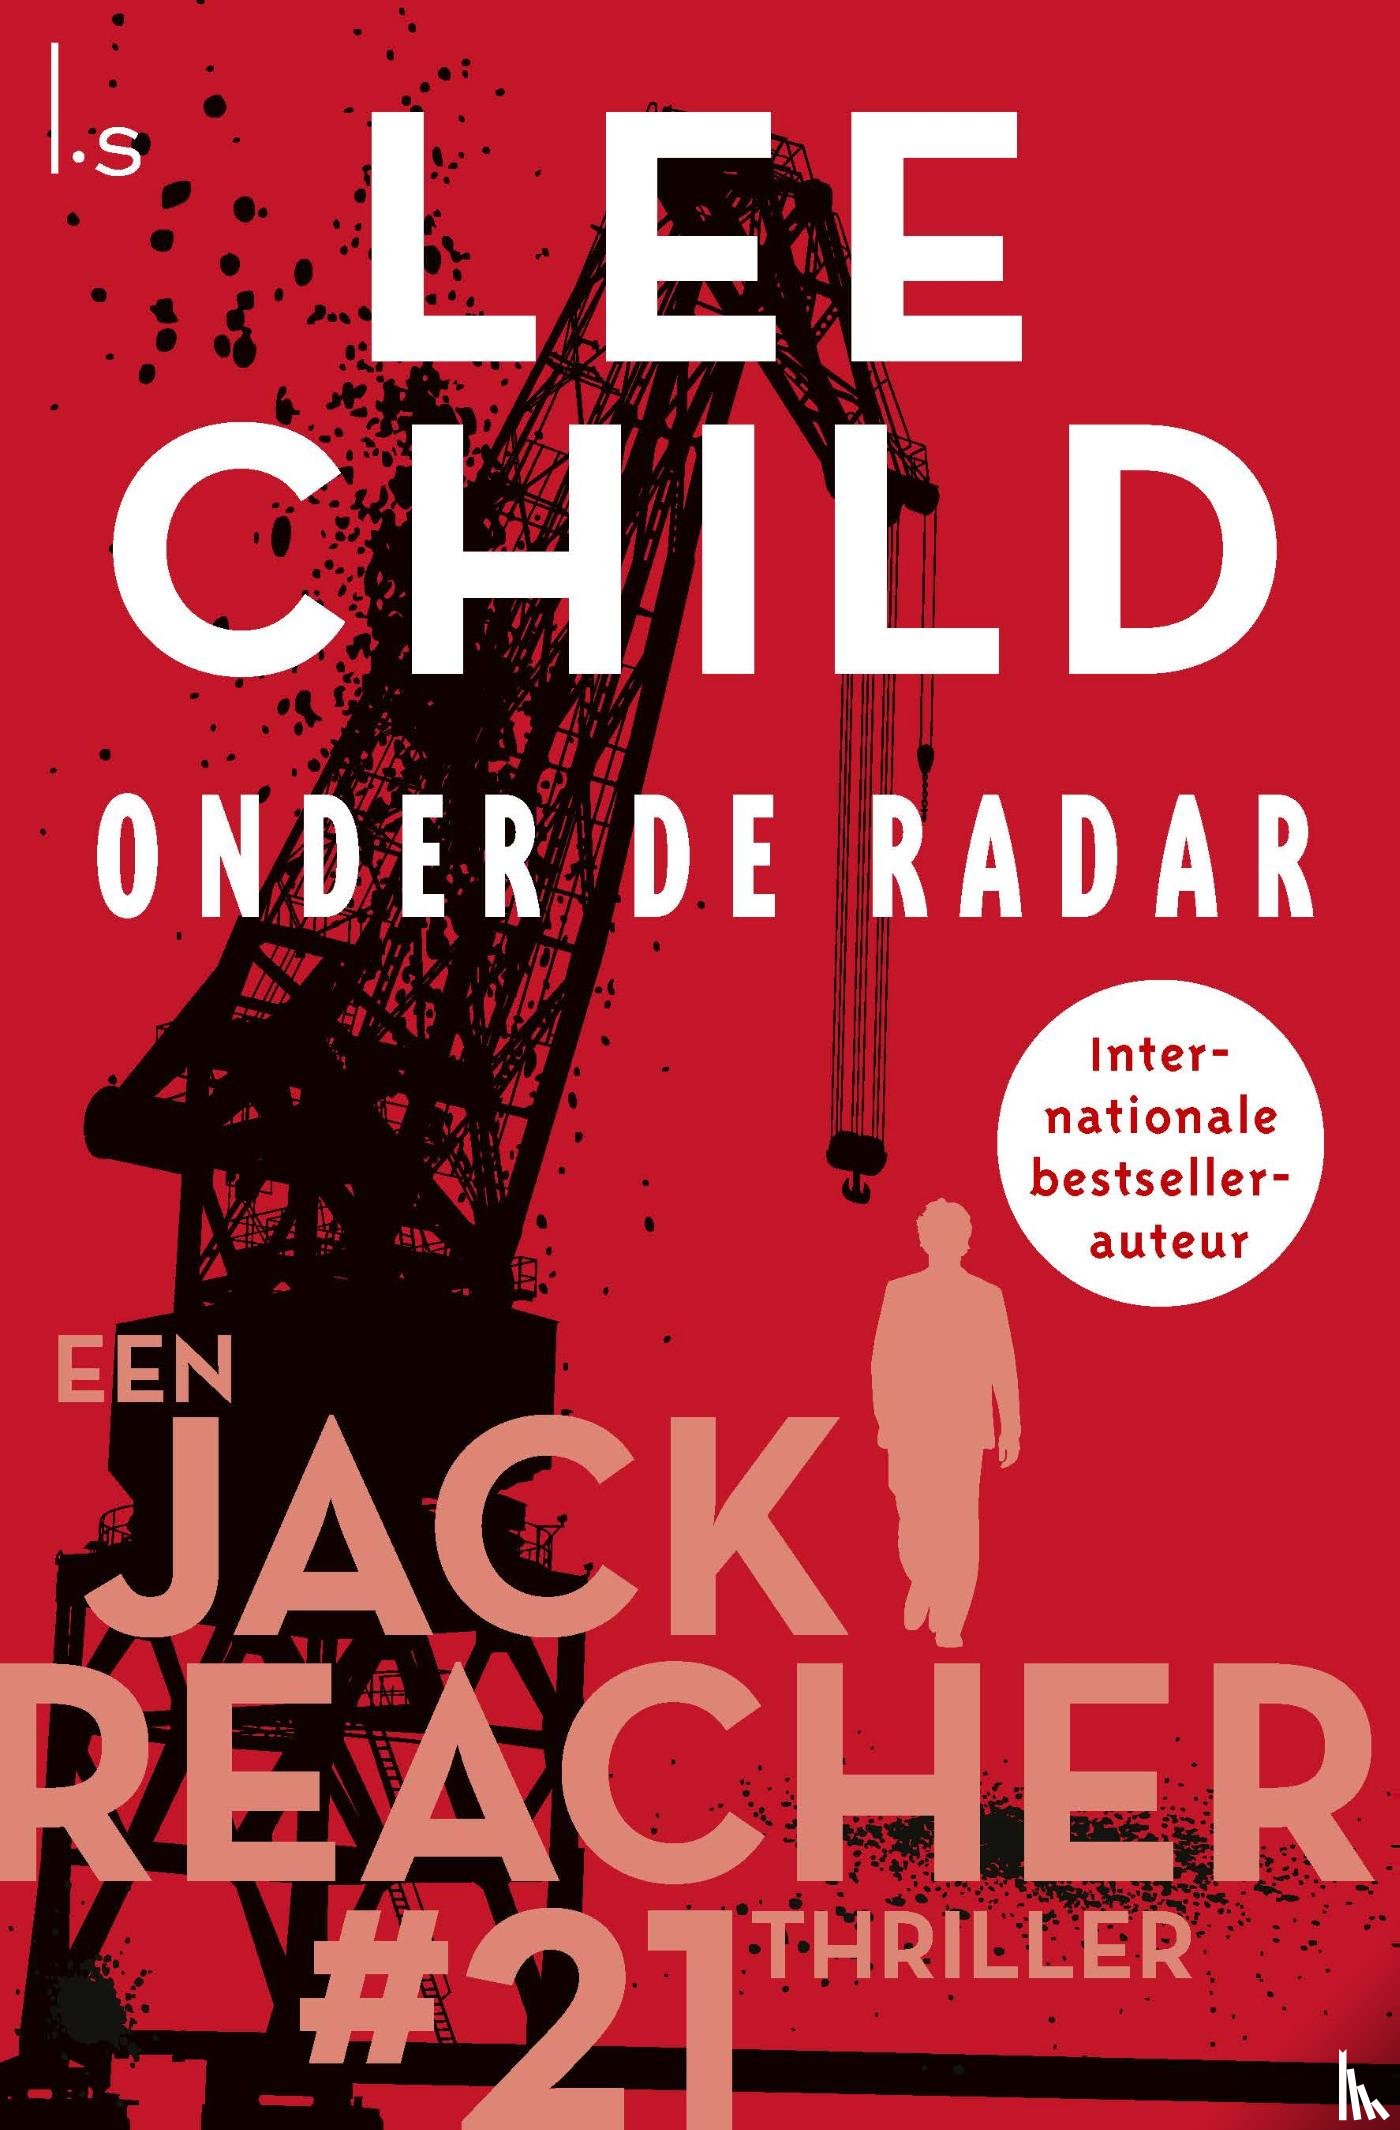 Child, Lee - Onder de radar